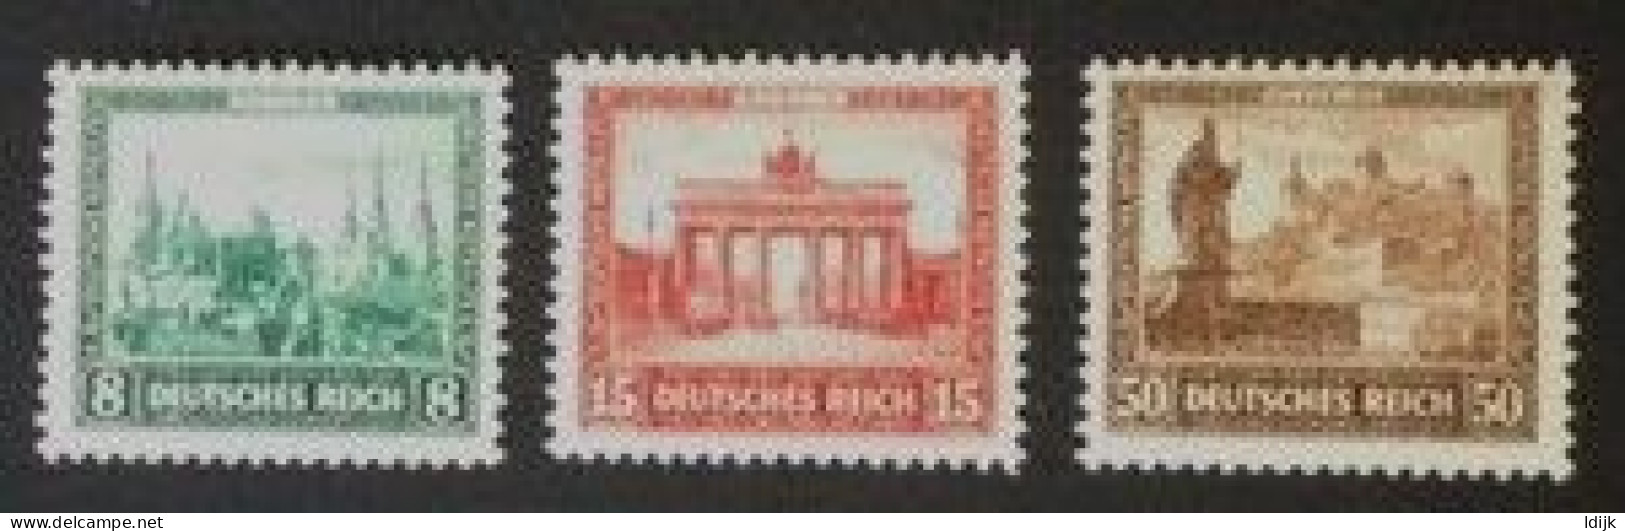 1930 Deutsche Nothilfe : Bauwerke Mi. 450*), 451*), 453*) - Ungebraucht